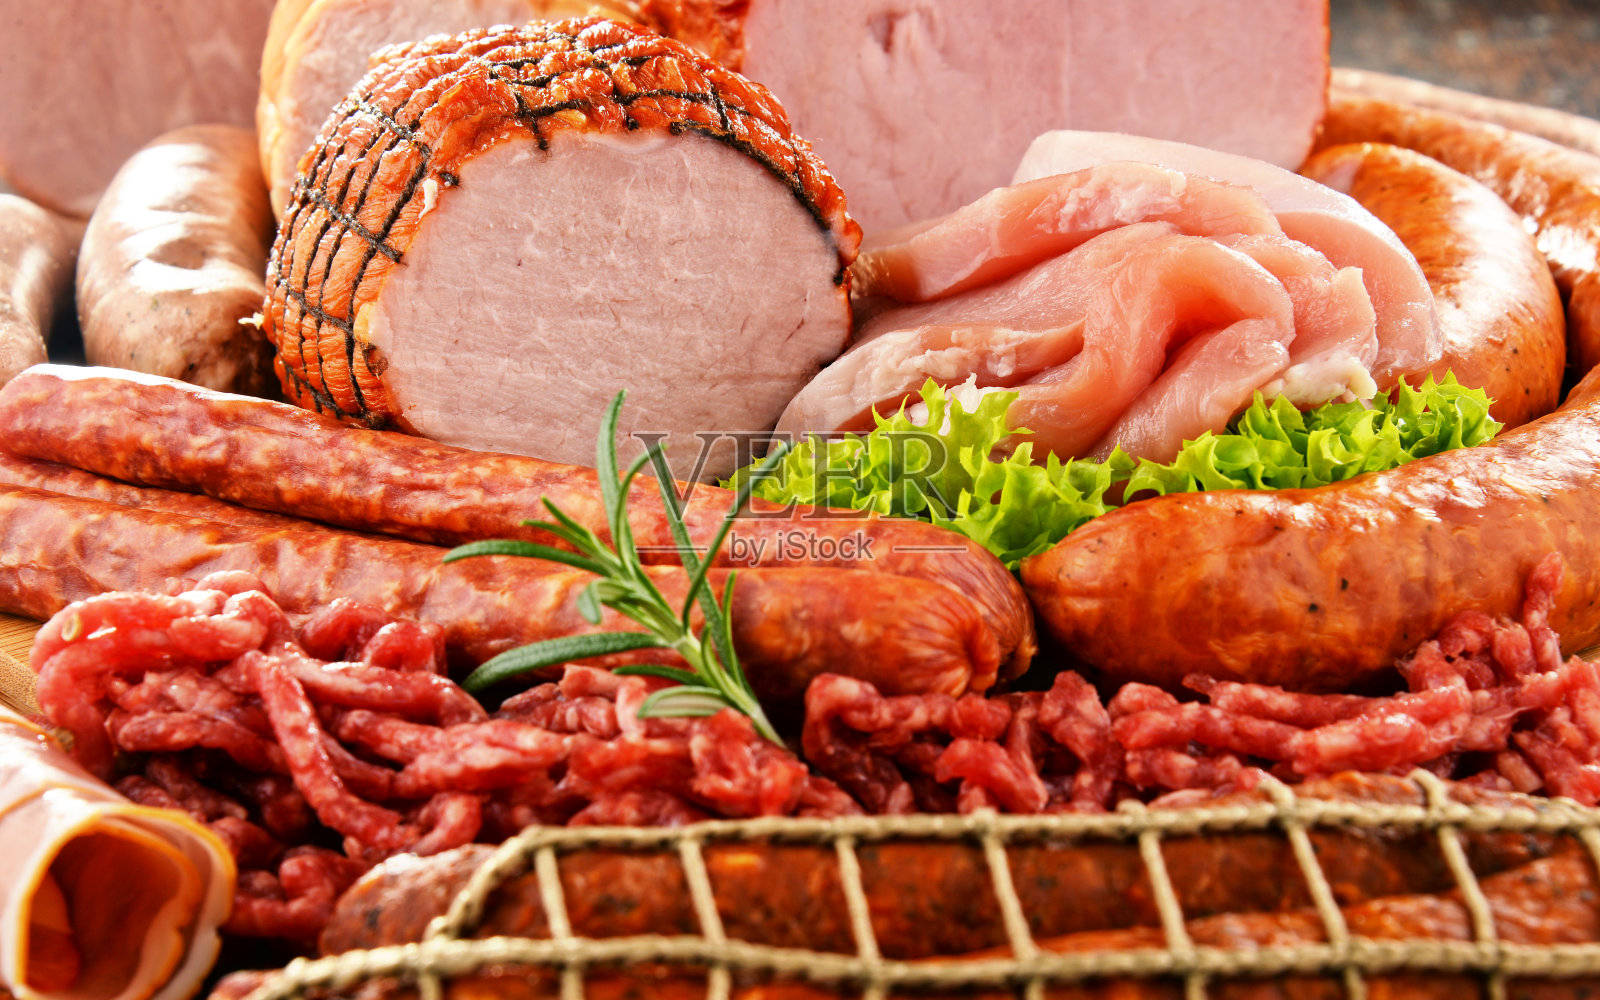 肉类产品,包括火腿和香肠照片摄影图片